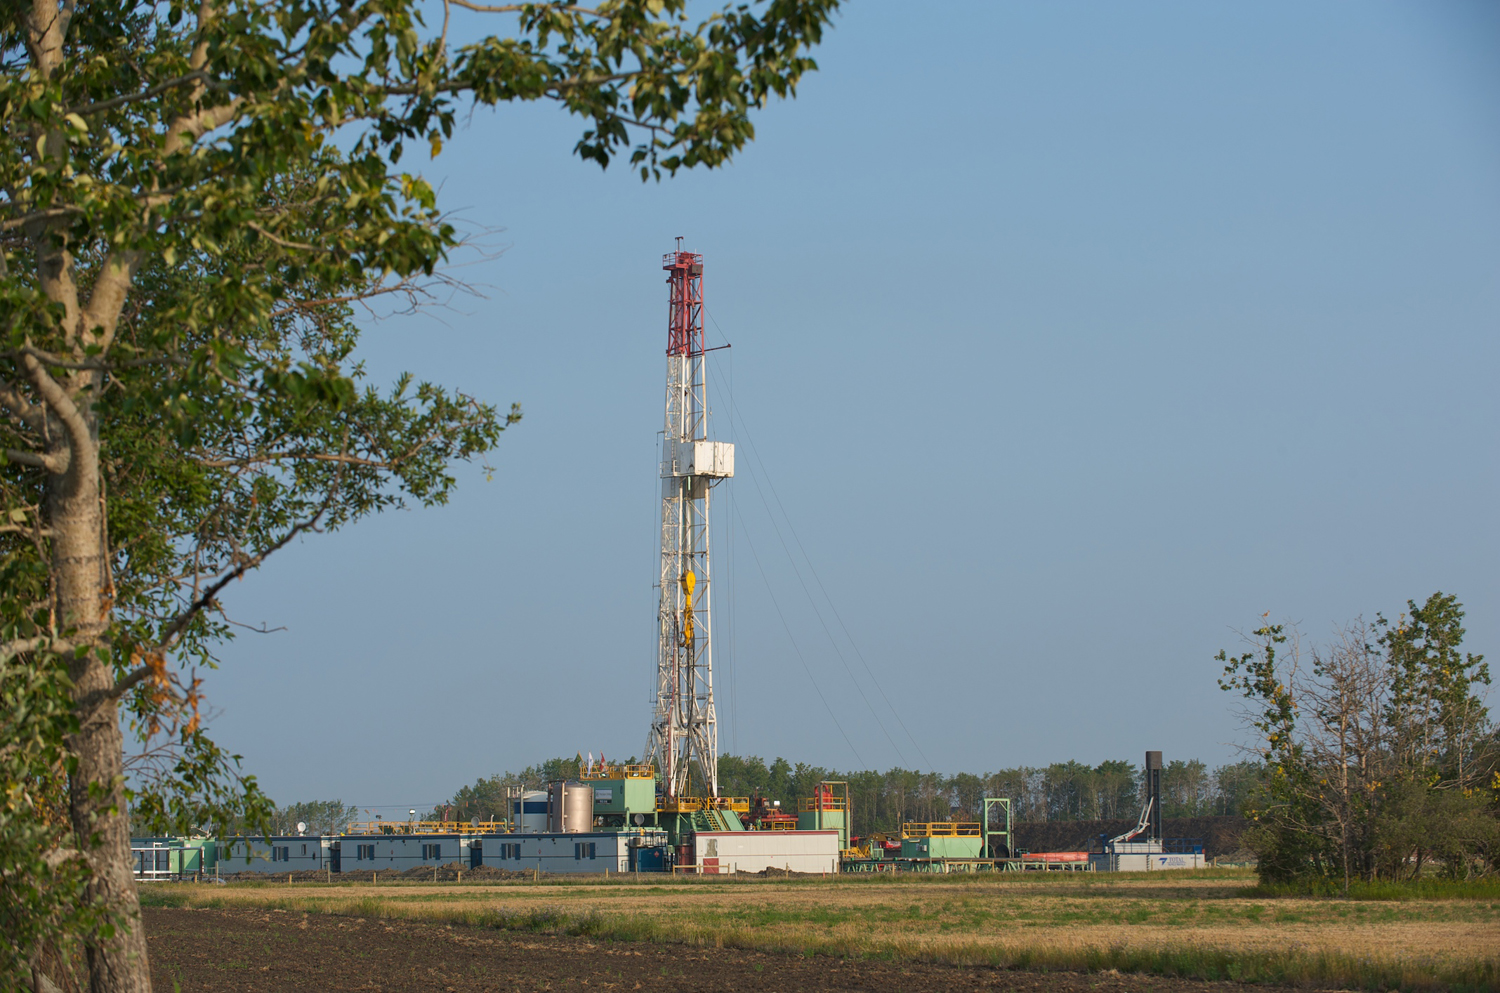 Western gas drilling